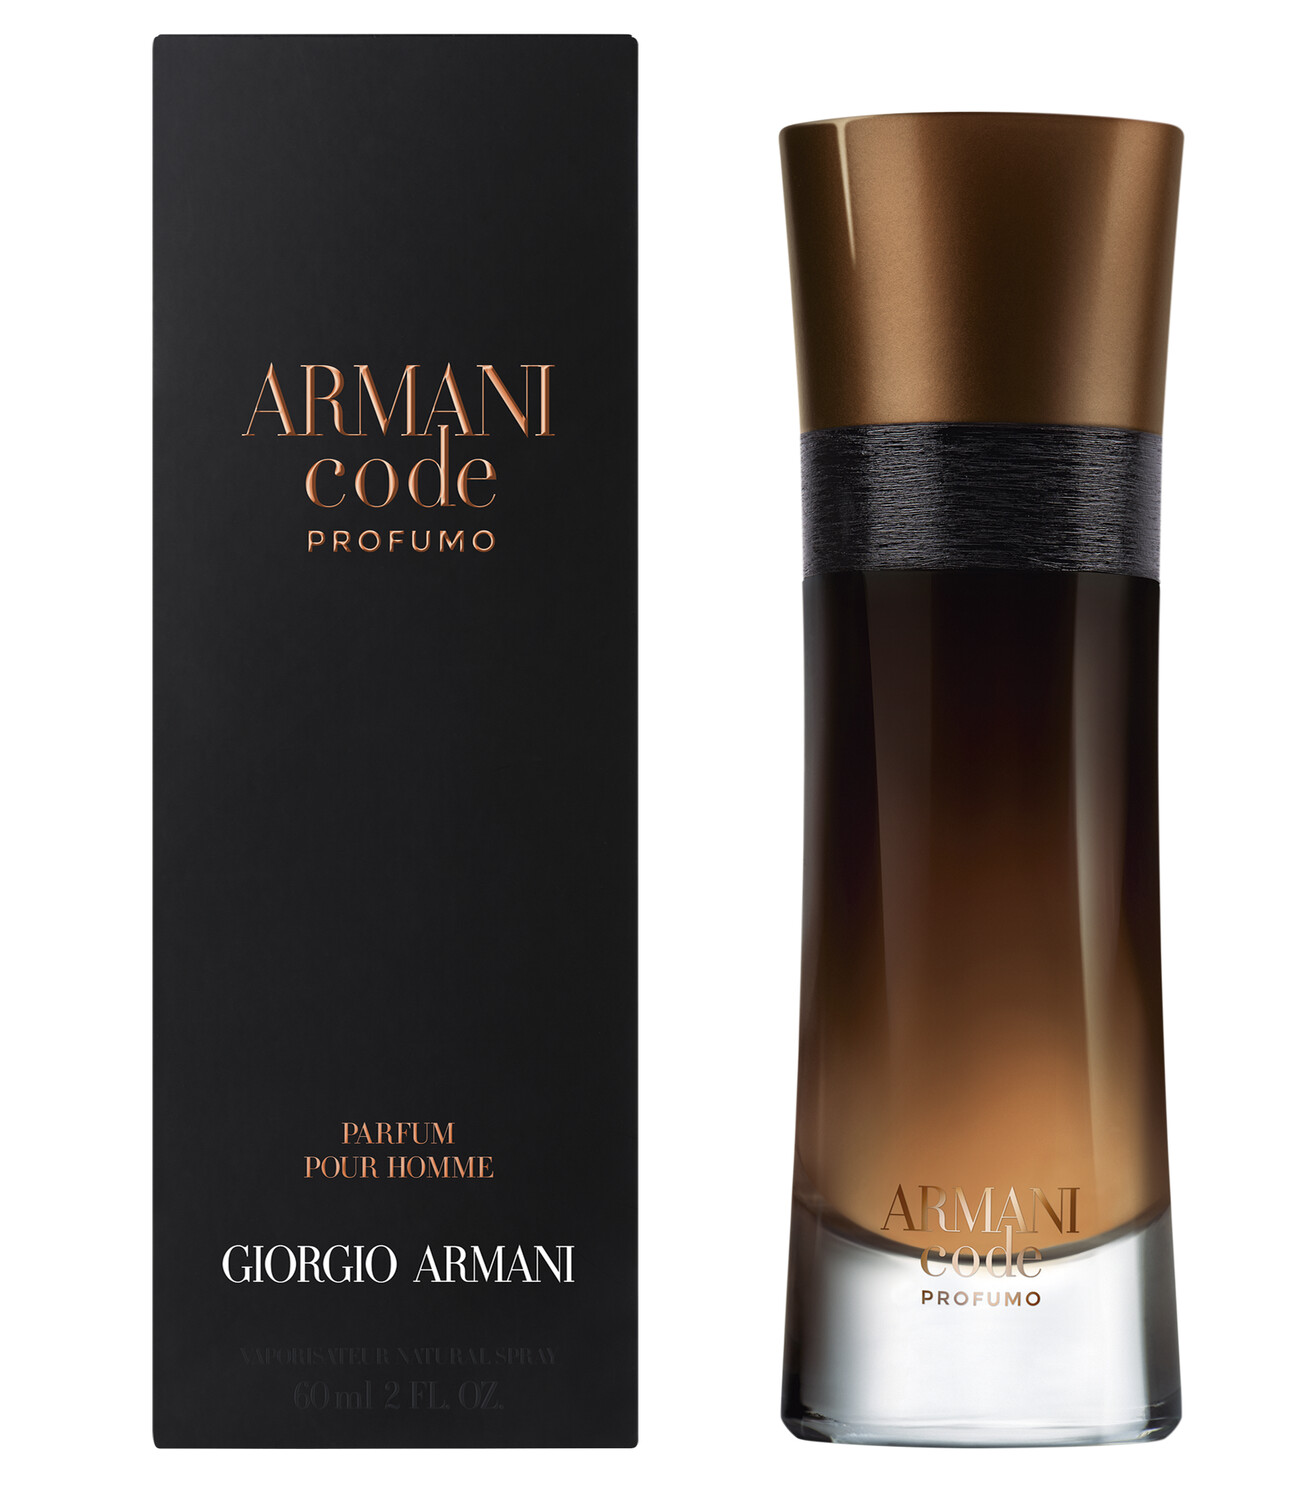 Armani Code Profumo - Giorgio Armani